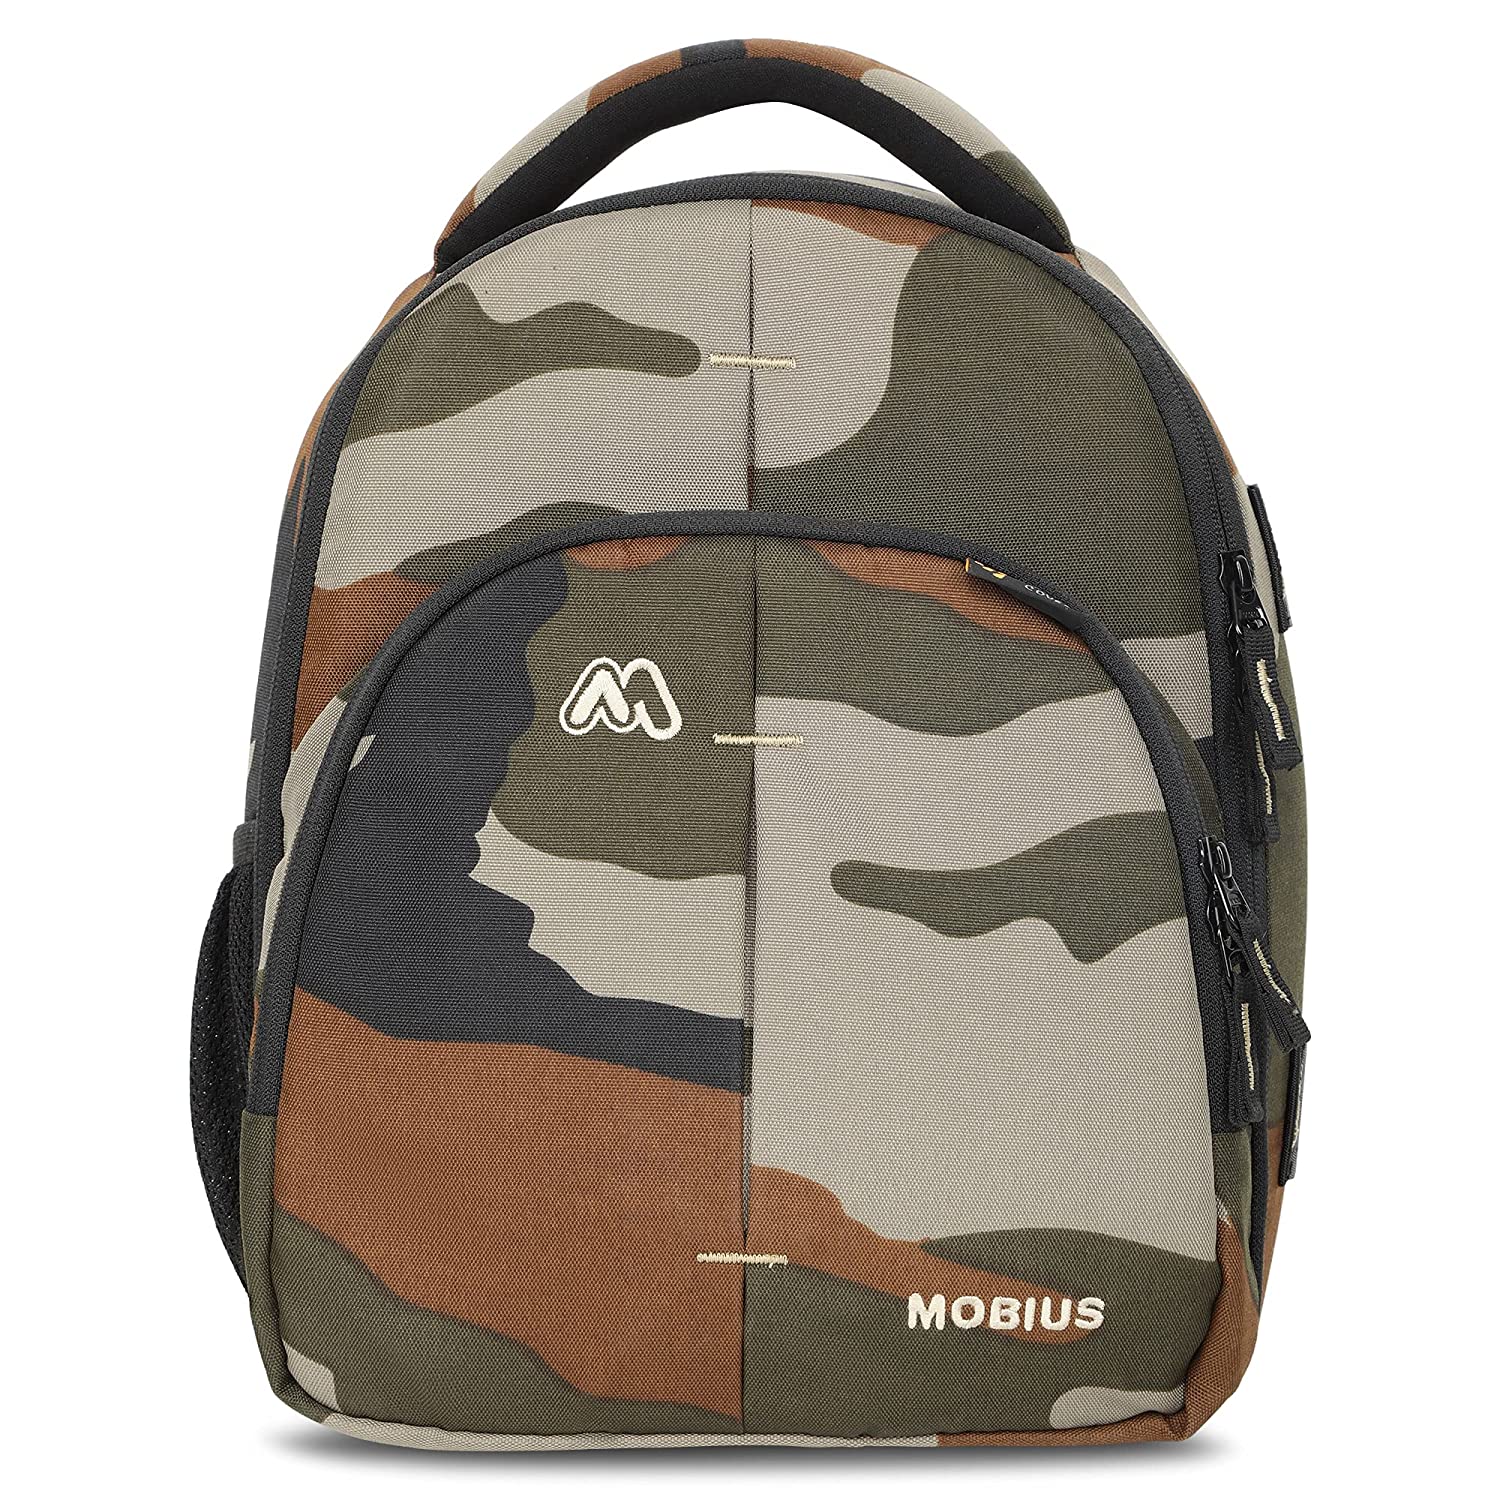 Mobius focus Camouflage 100% Waterproof dslr Backpack - The Camerashop